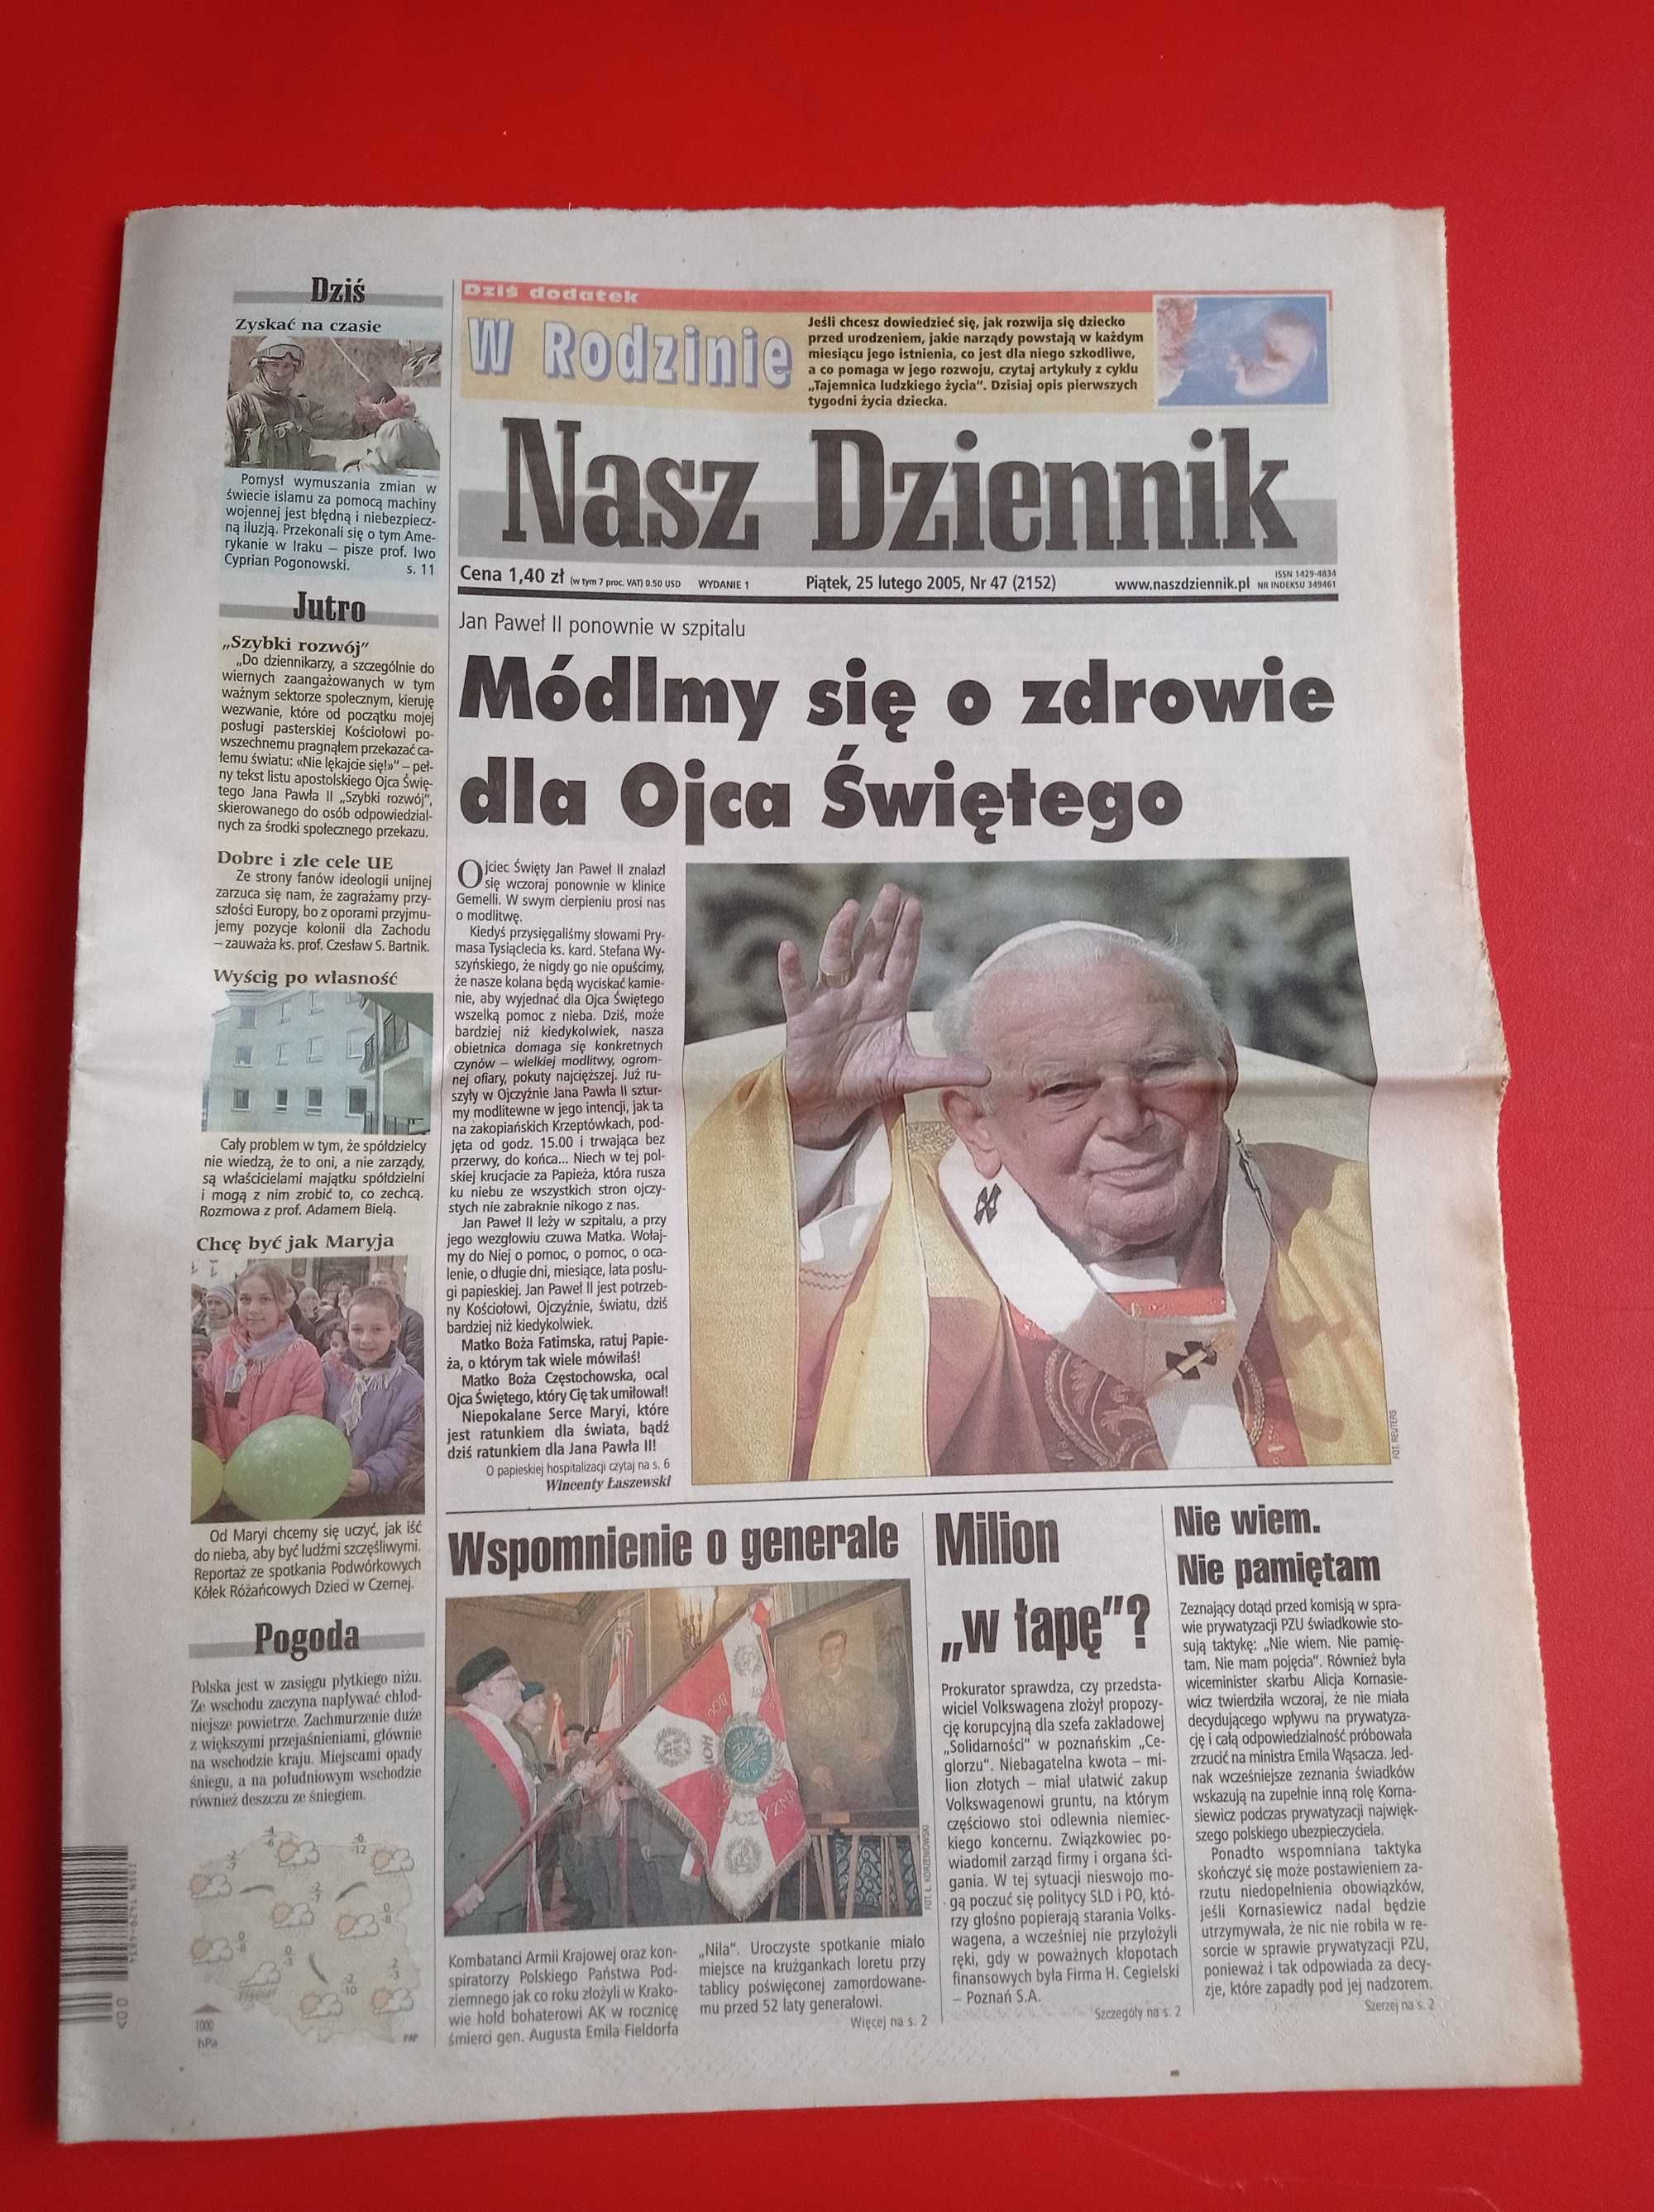 Nasz Dziennik, nr 47/2005, 25 lutego 2005, Jan Paweł w szpitalu